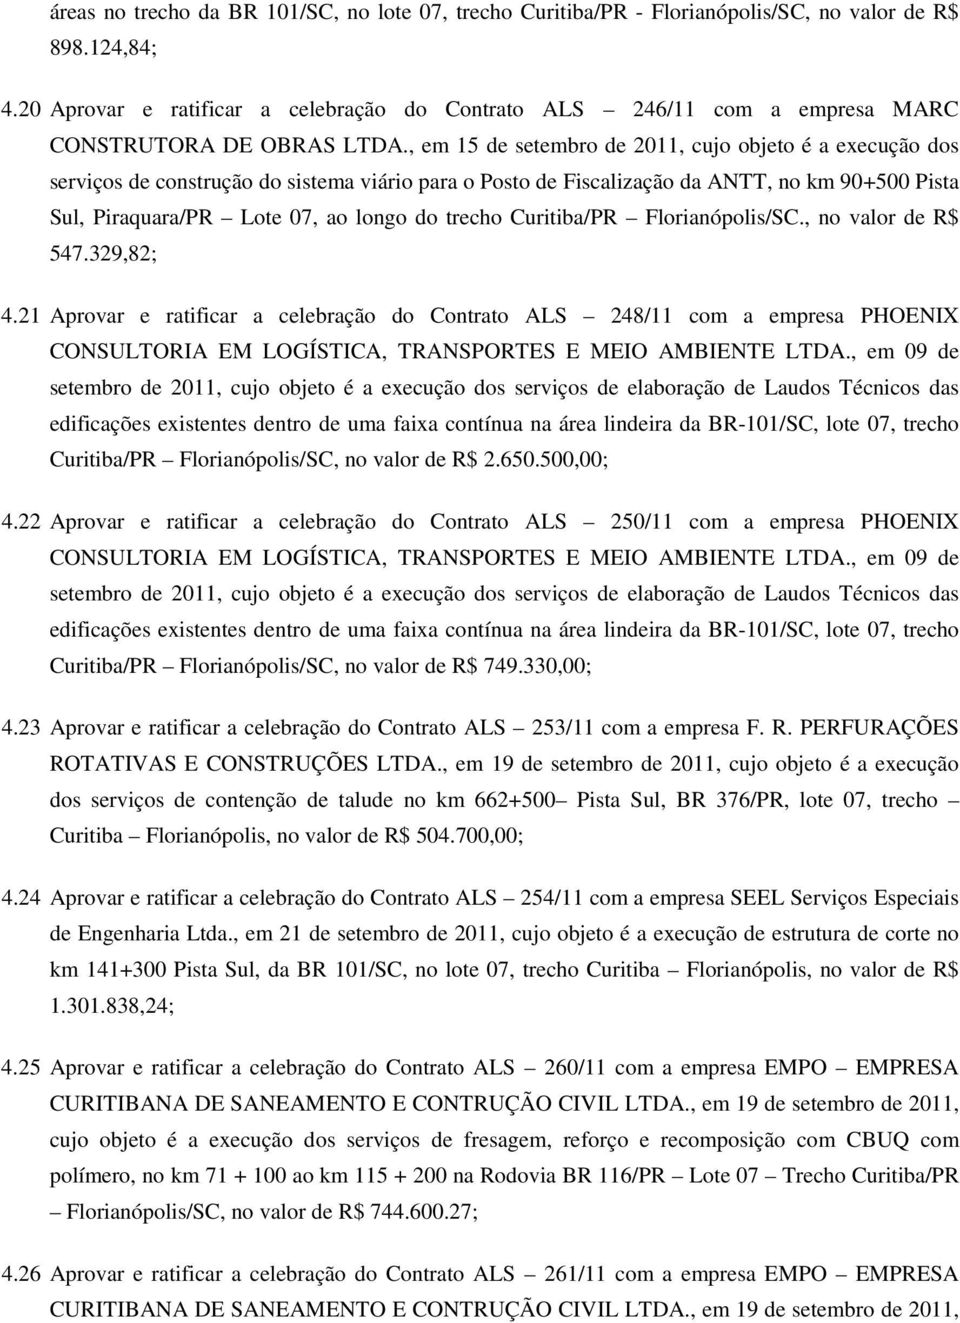 , em 15 de setembro de 2011, cujo objeto é a execução dos serviços de construção do sistema viário para o Posto de Fiscalização da ANTT, no km 90+500 Pista Sul, Piraquara/PR Lote 07, ao longo do